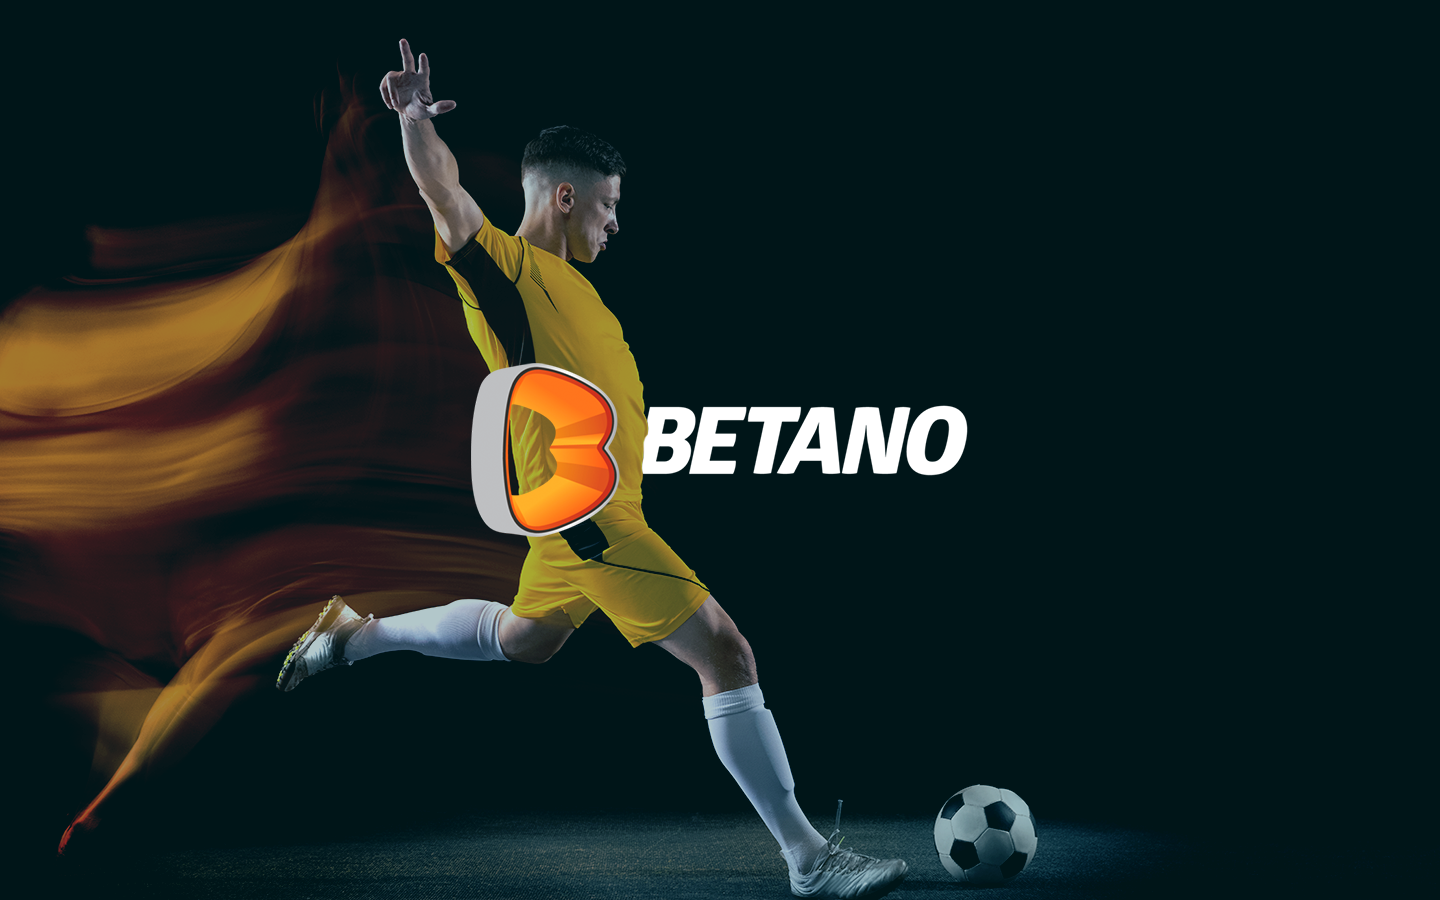 Mundial de clubes 2023: Betano se torna apoiadora oficial do torneio –  Betano Blog